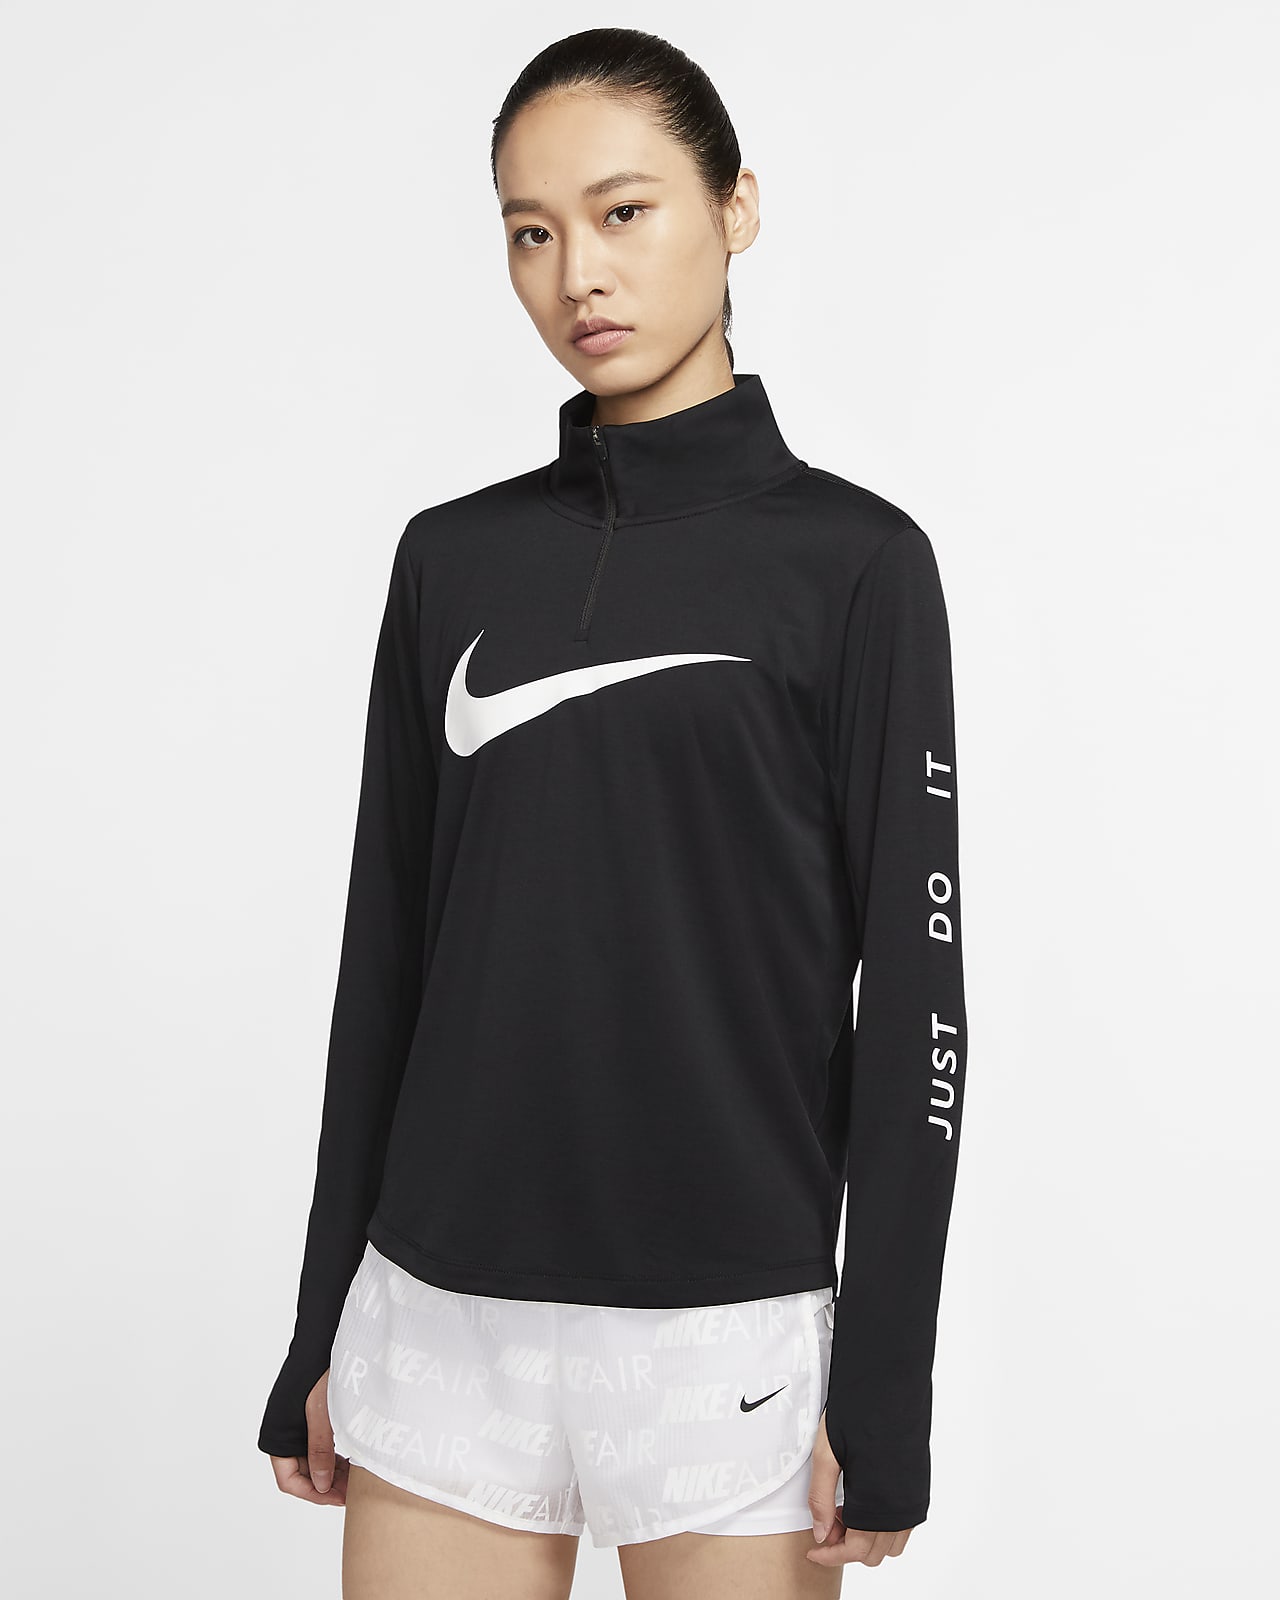 Nike 女子 1/4 拉链开襟跑步上衣